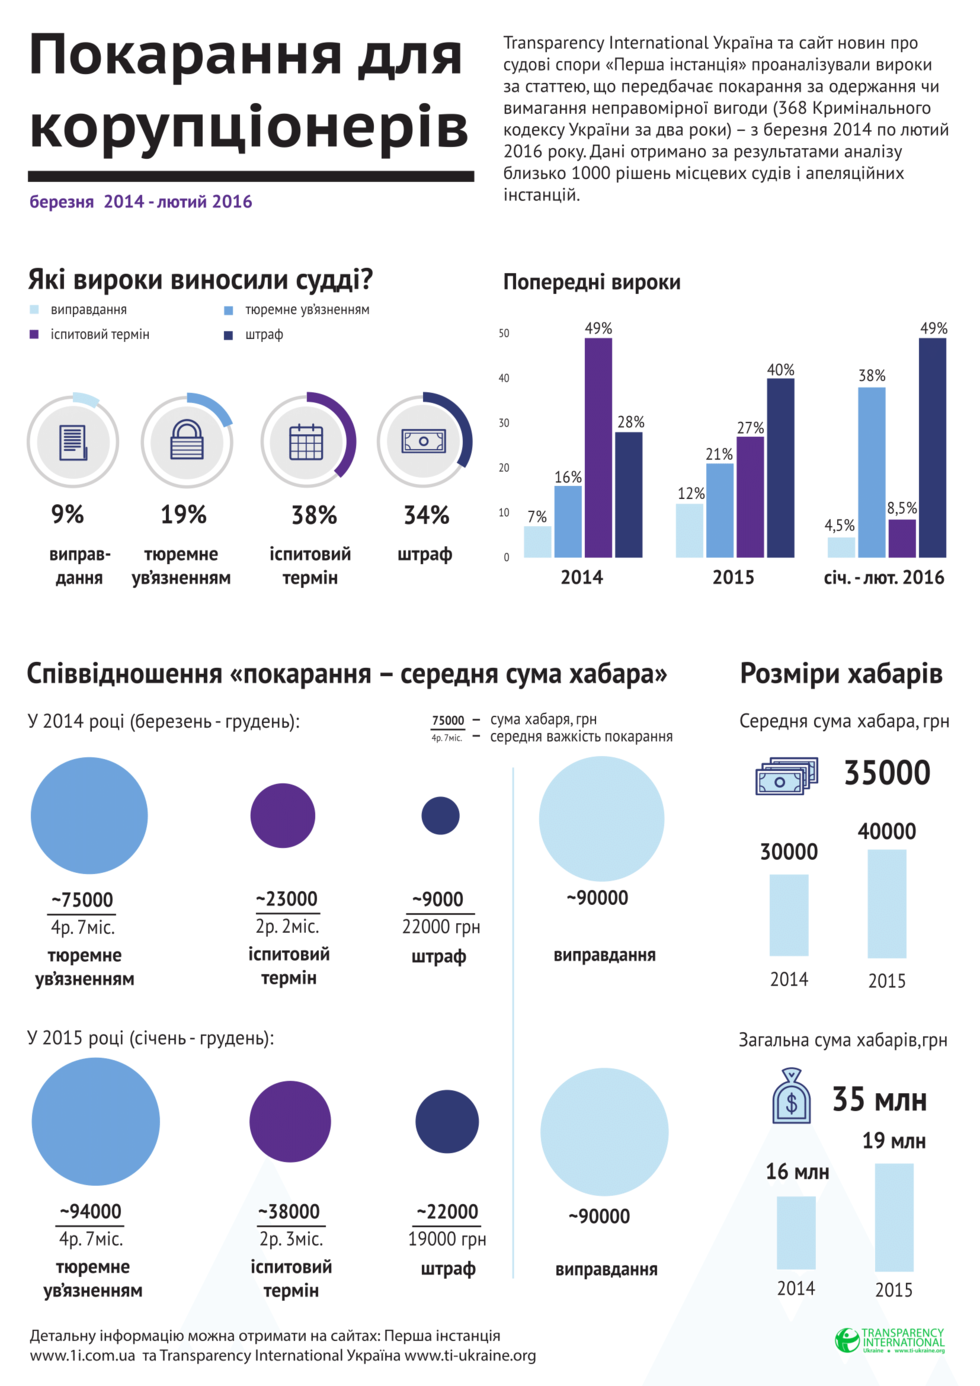 Как в Украине наказывают взяточников. Инфографика 1